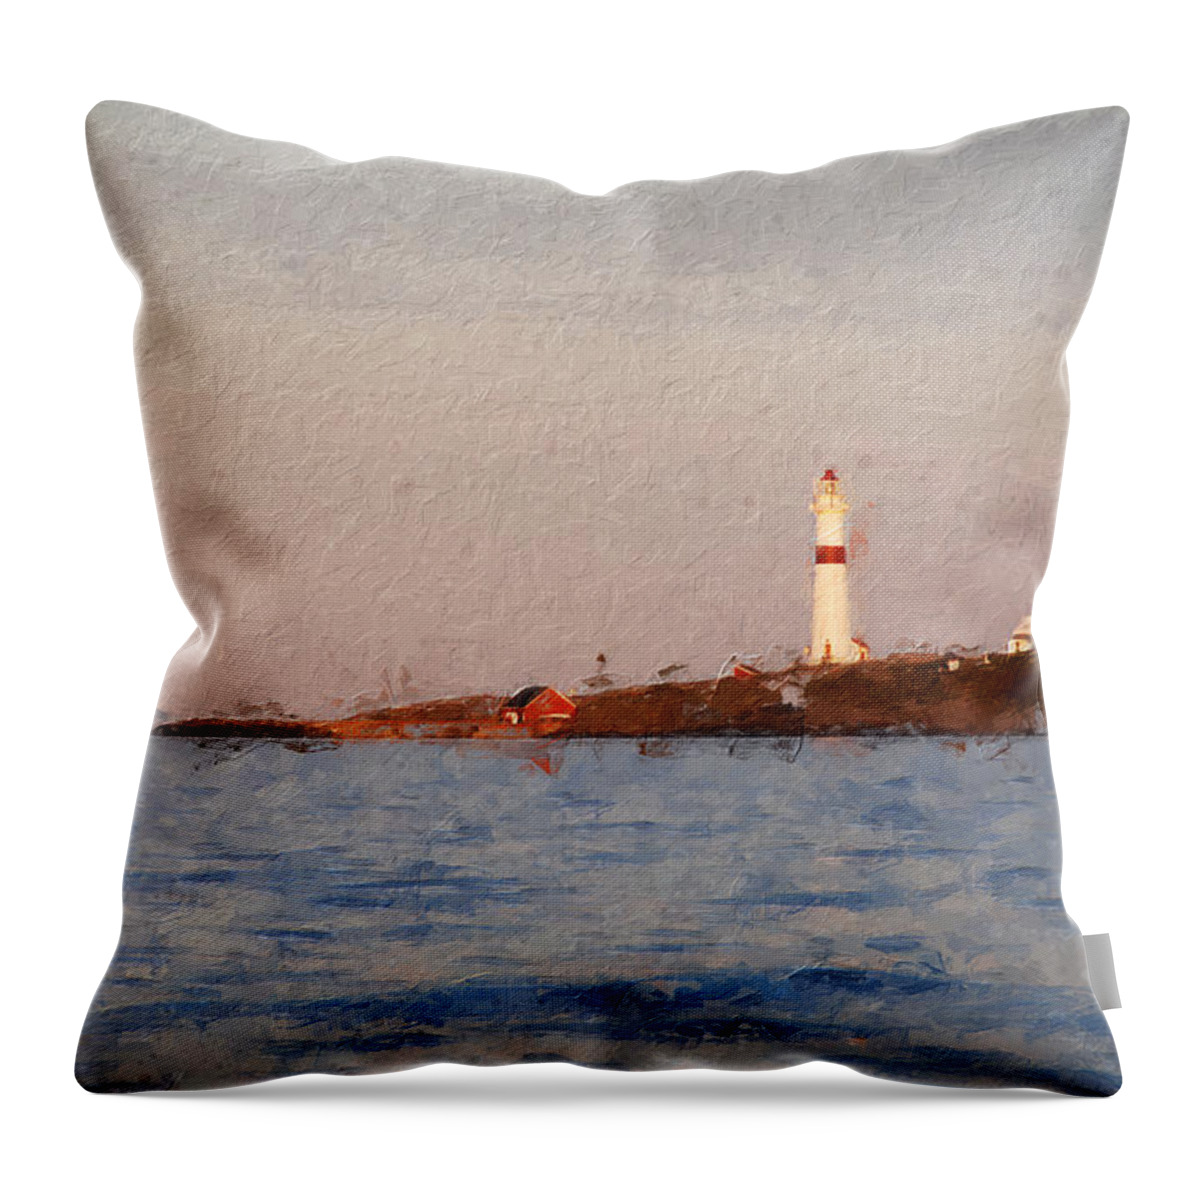 Lighthouse Throw Pillow featuring the digital art Torungen lighthouse by Geir Rosset